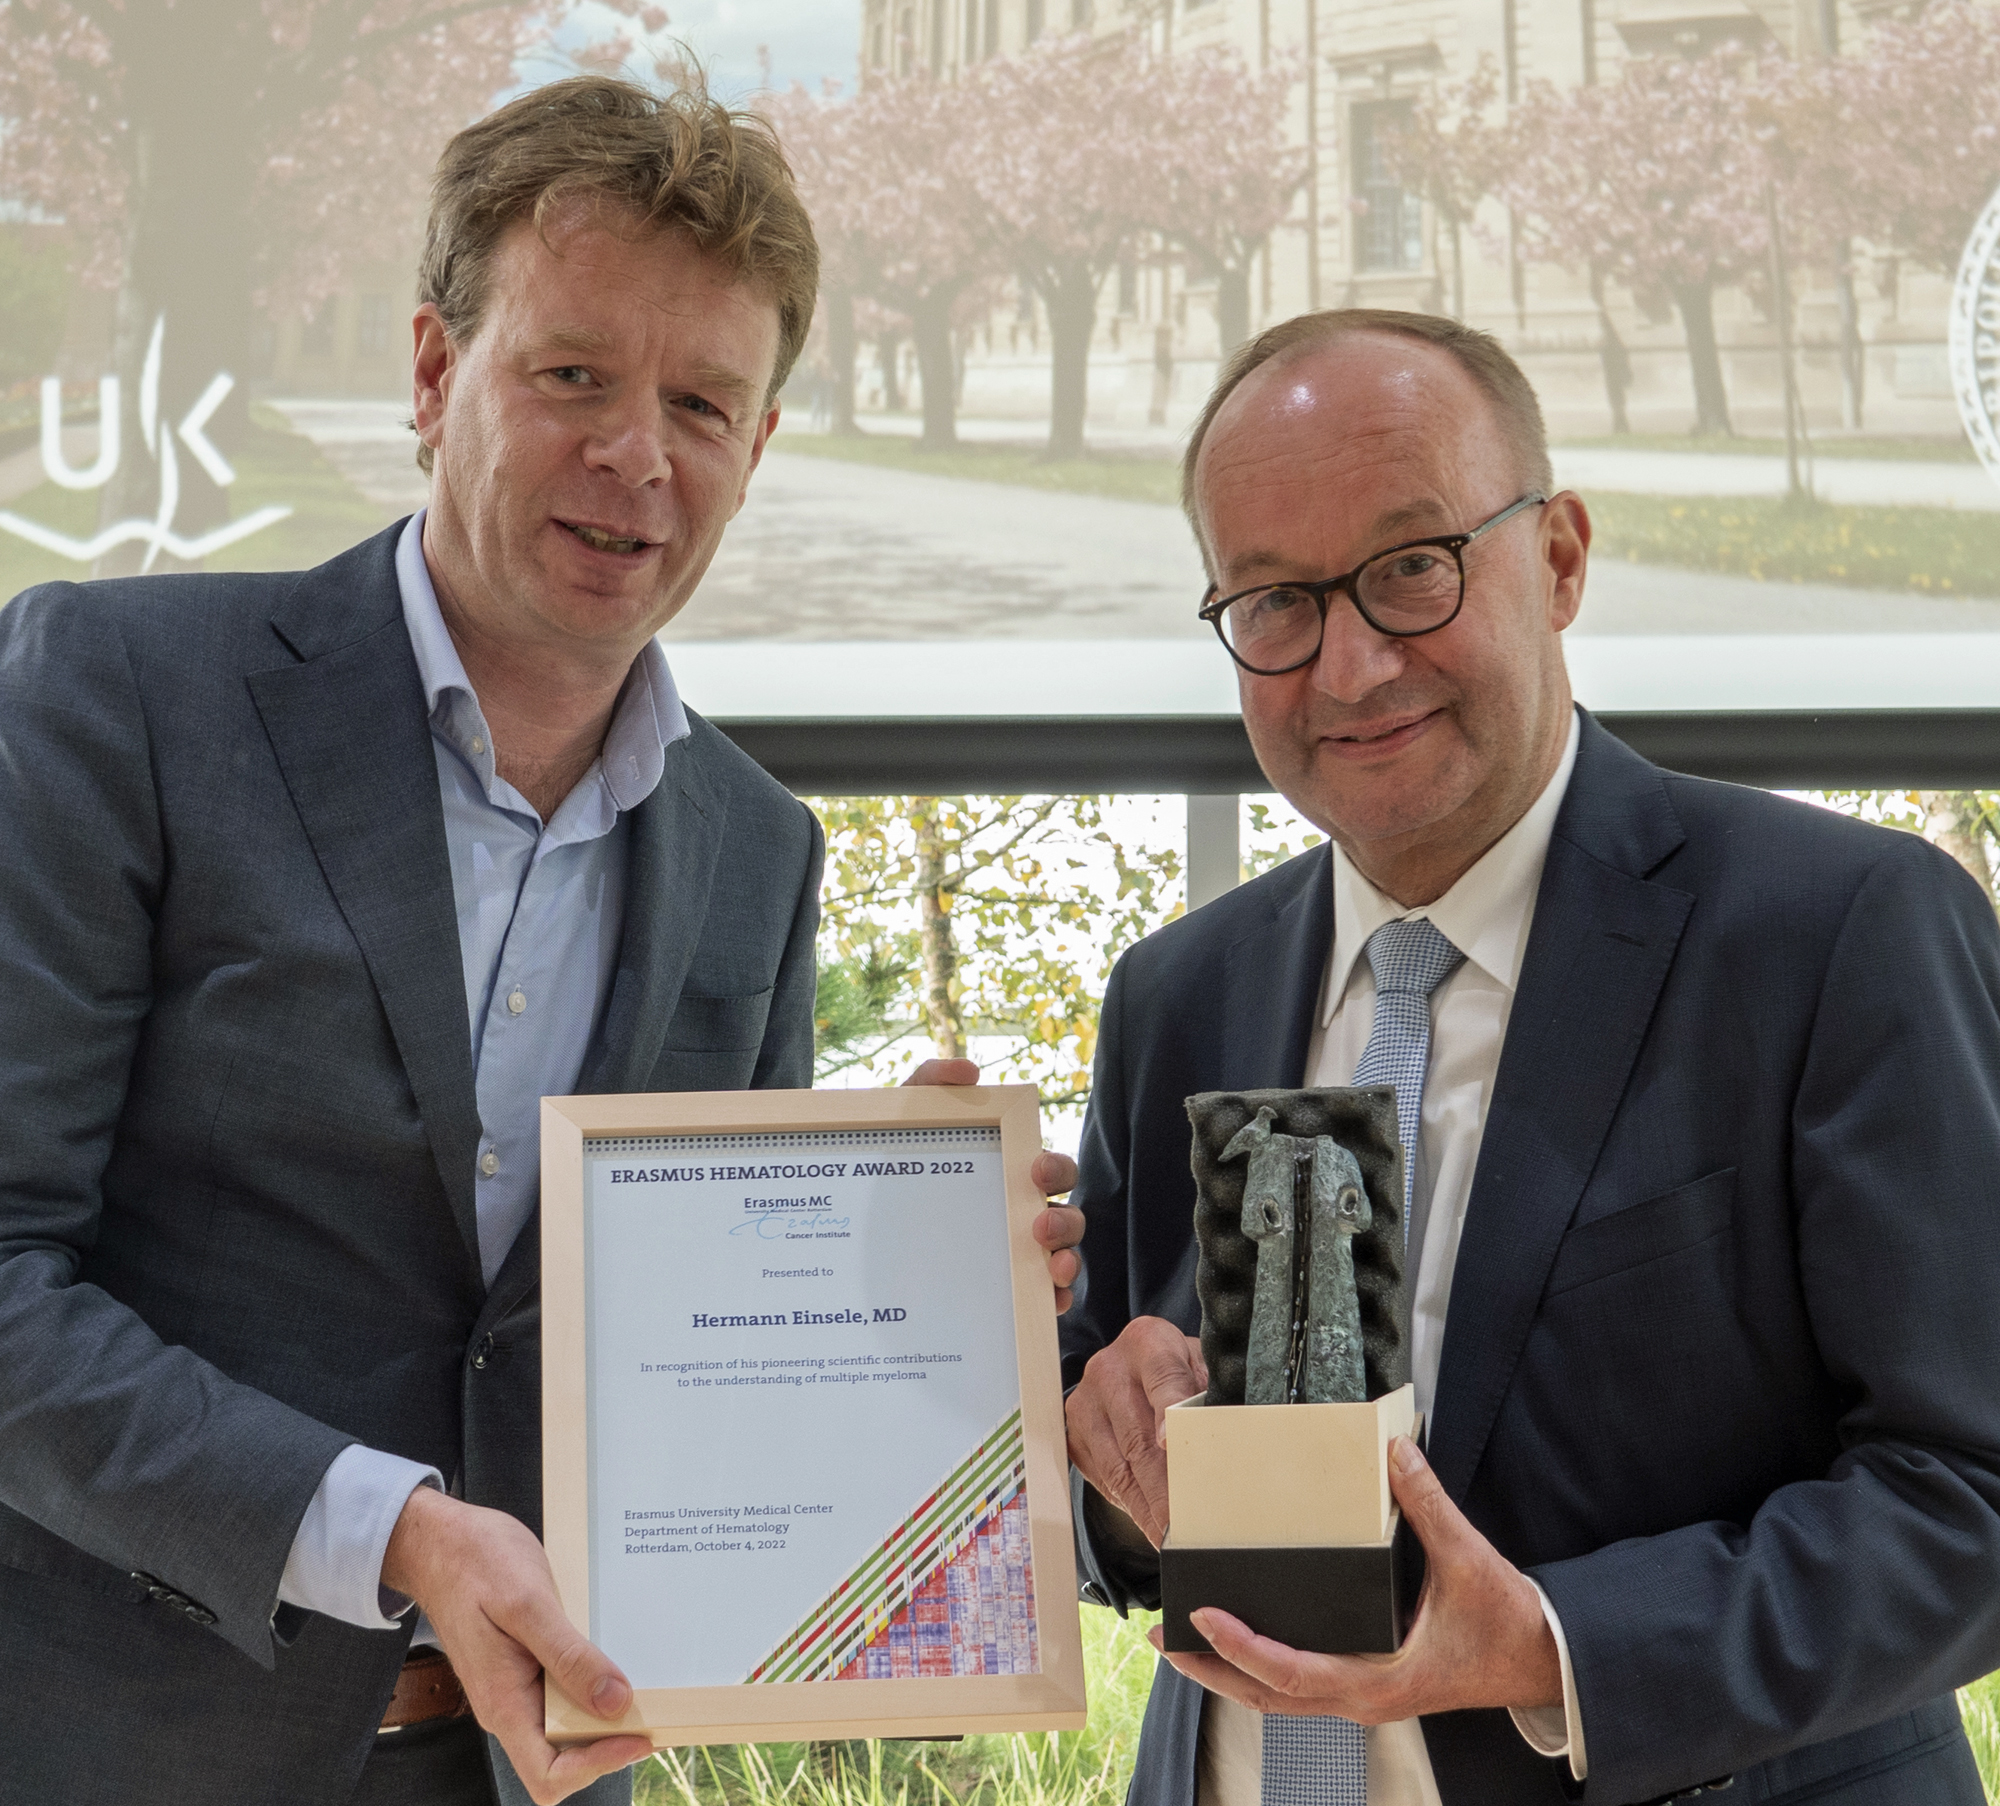 Prof. Dr. Hermann Einsele (rechts) erhielt den Erasmus-Hämatologie-Preis 2022 von Prof. Dr. Stefan Sleijfer, dem Dekan des niederländischen Erasmus University Medical Centers.